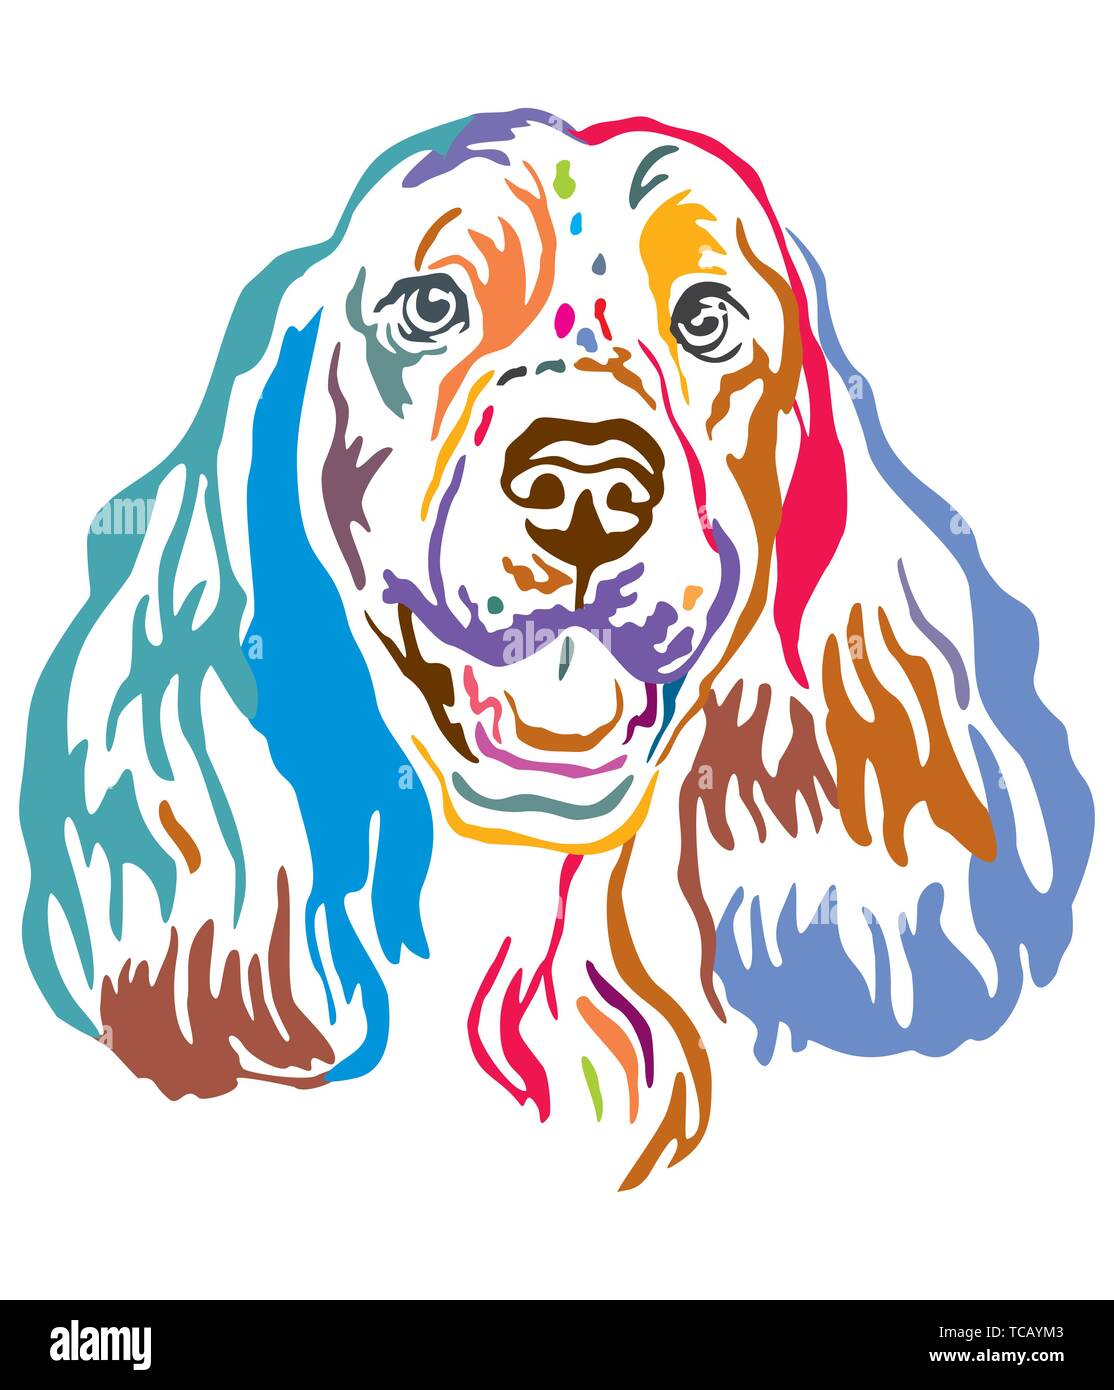 Colorato contorno decorativo ritratto di Springer Spaniel cane, illustrazione vettoriale in colori diversi isolati su sfondo bianco. Immagine per la progettazione di un Illustrazione Vettoriale